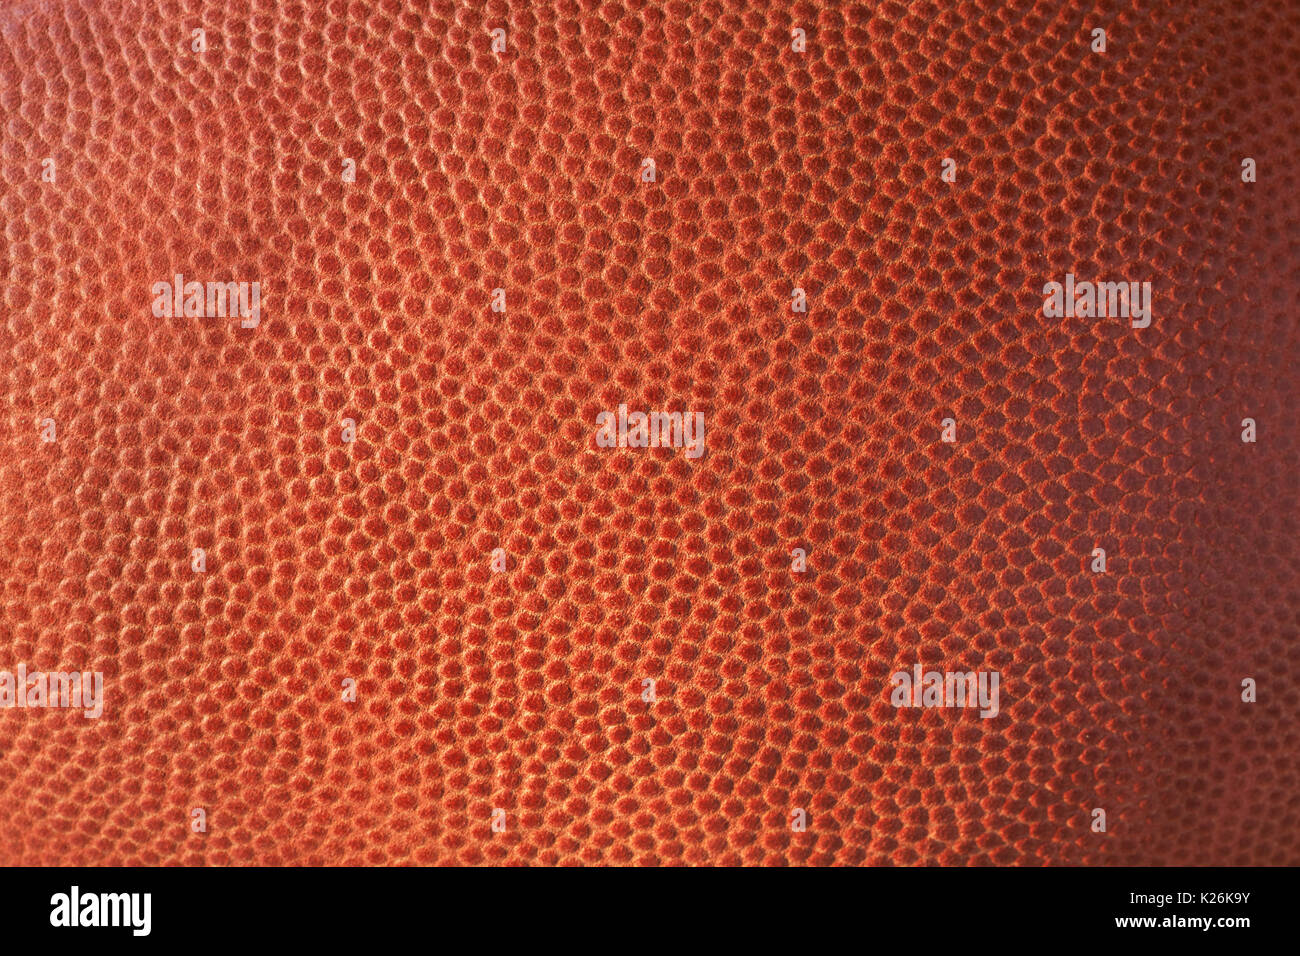 Gros plan sur la texture de cuir d'un football Banque D'Images